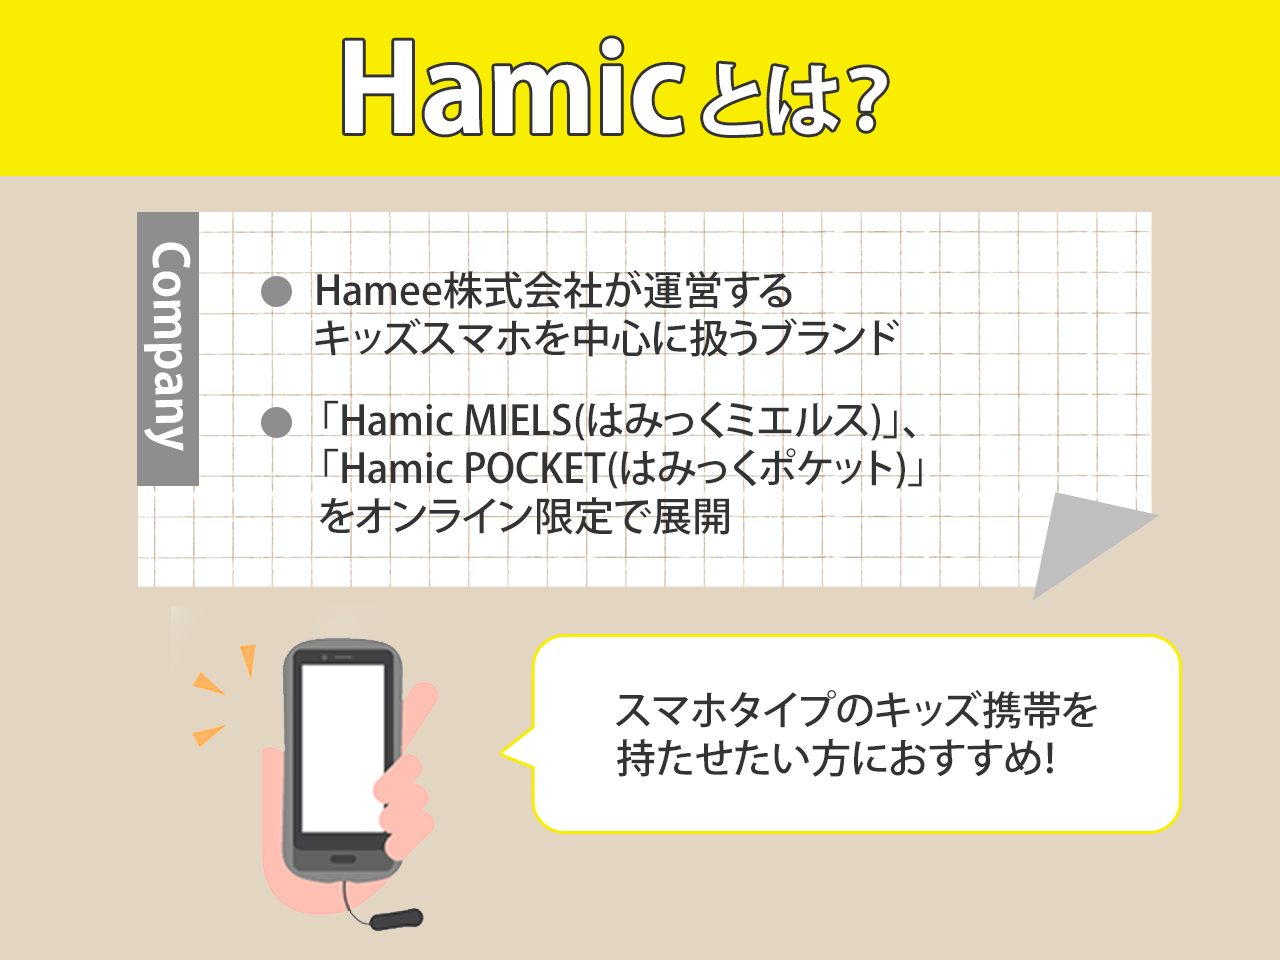 Hamic(ハミック)とは？